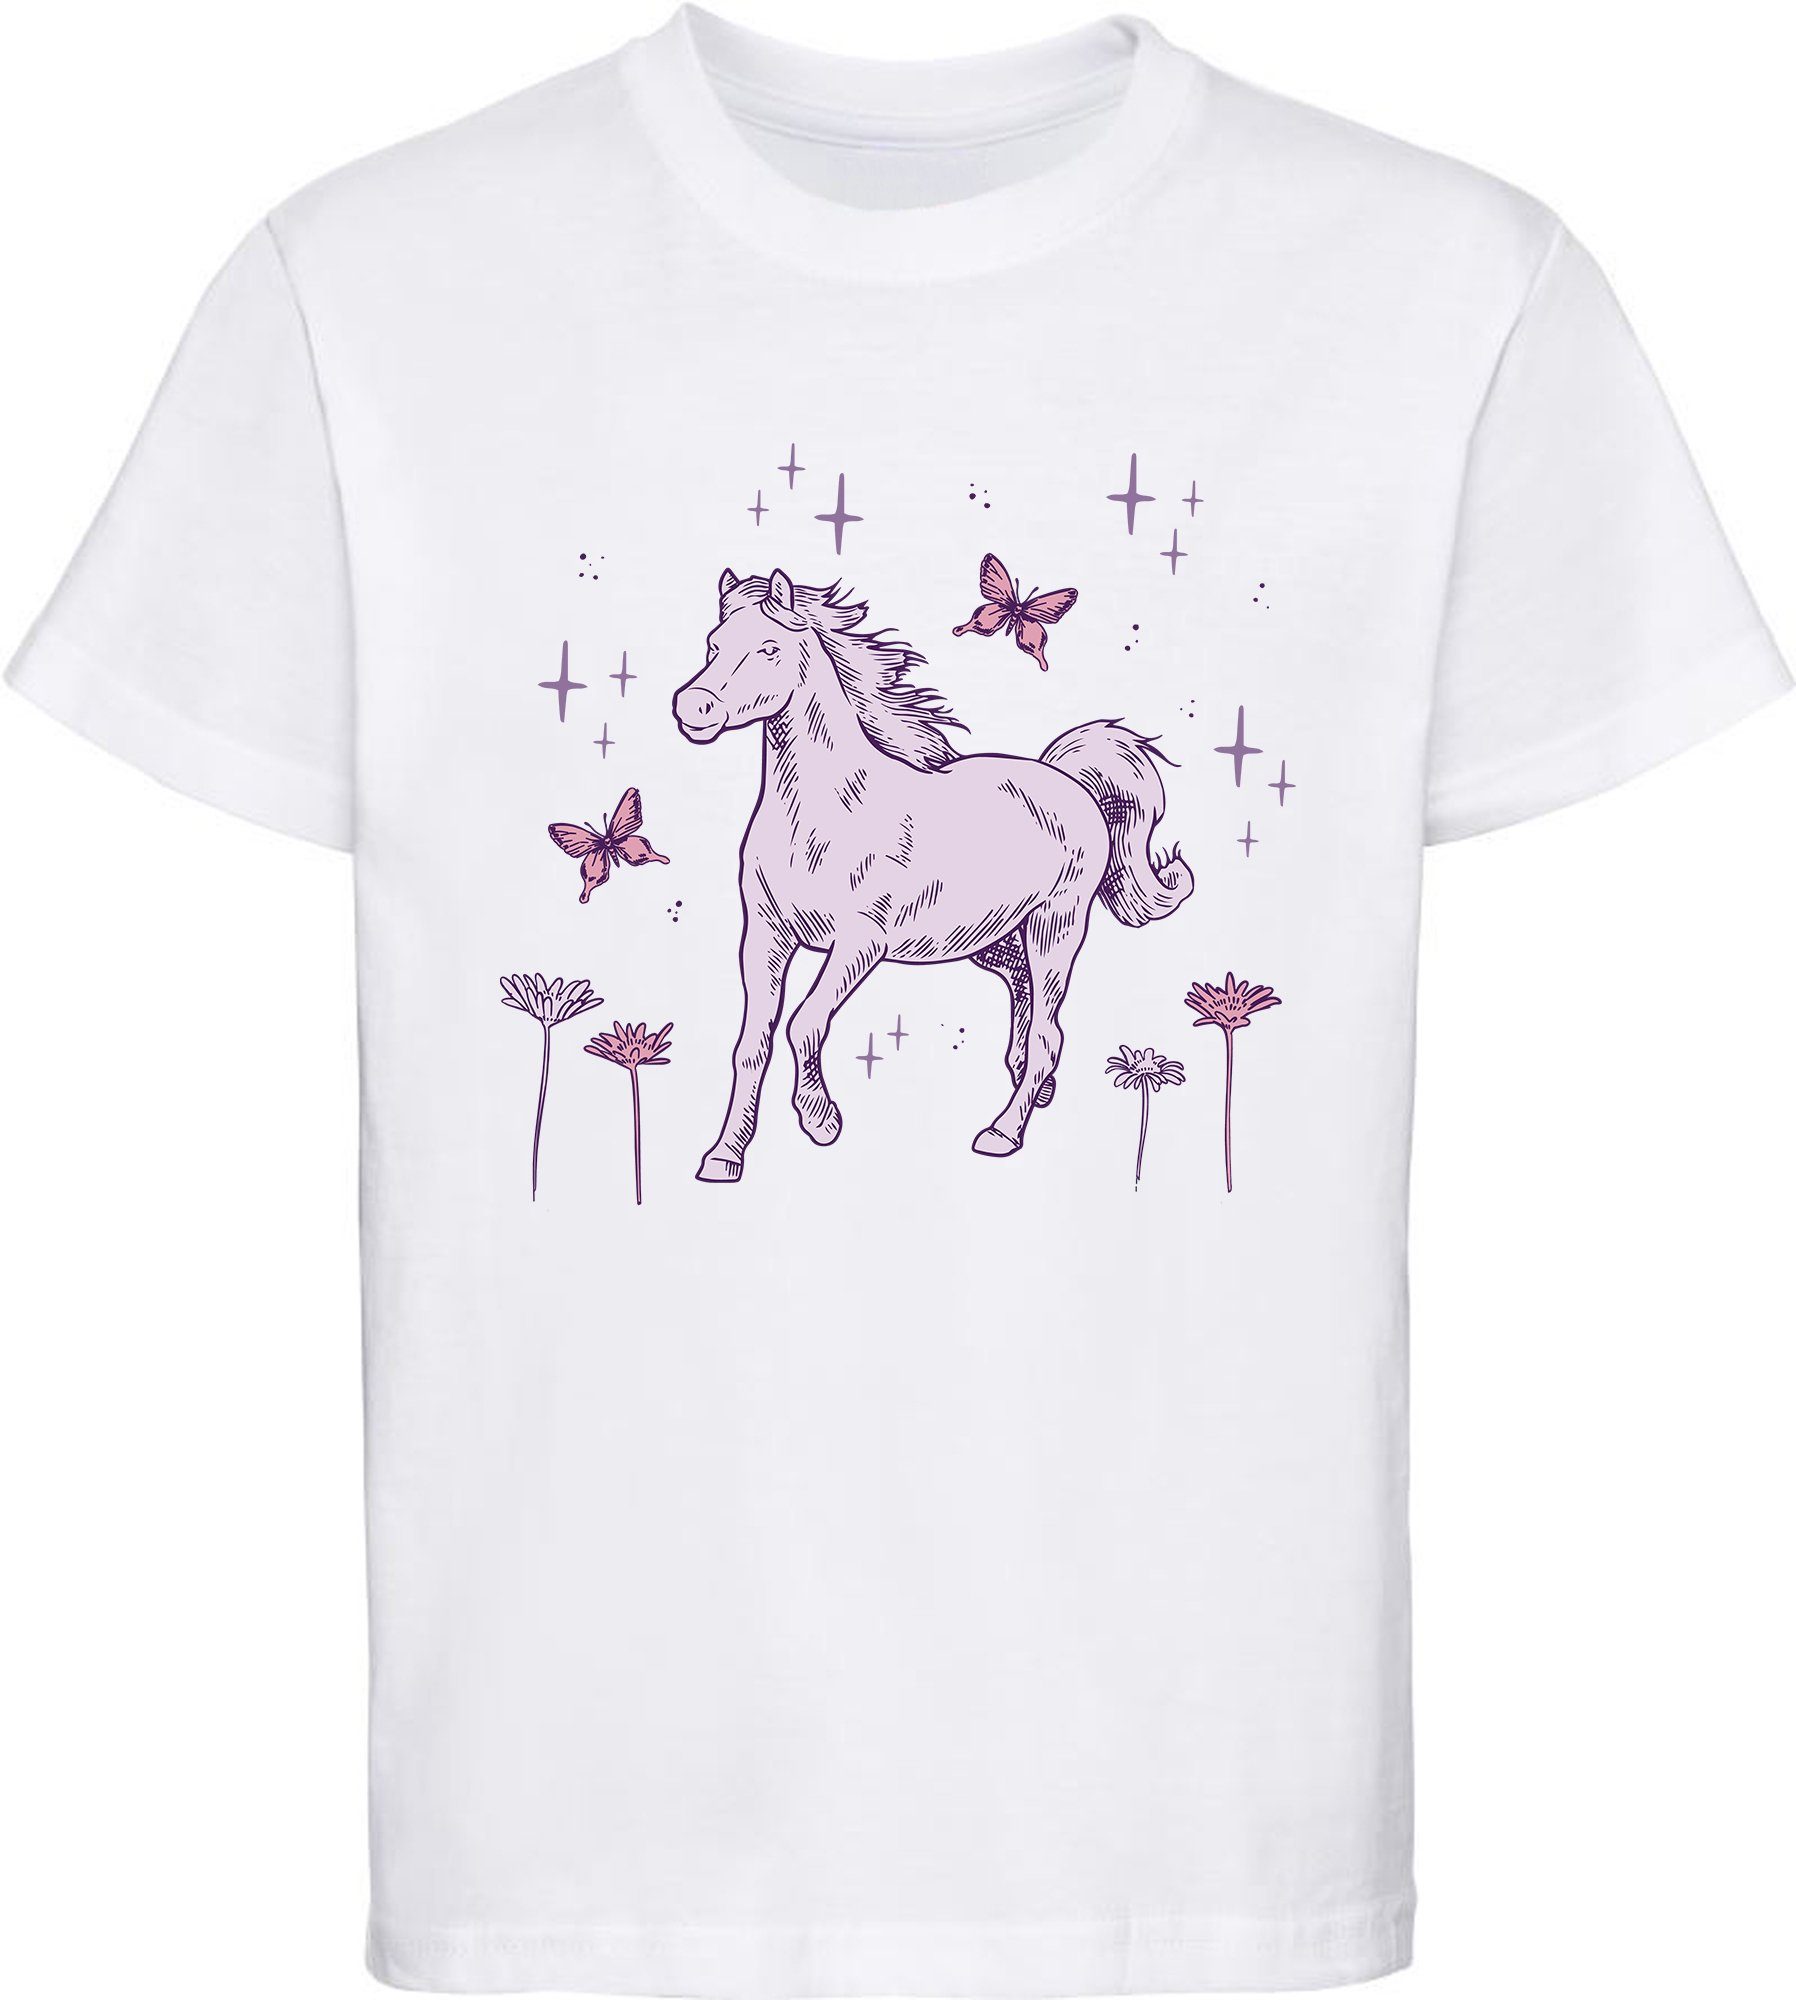 MyDesign24 Print-Shirt bedrucktes Mädchen T-Shirt galoppierendes Pferd und Blumen Baumwollshirt mit Aufdruck, i144 weiss